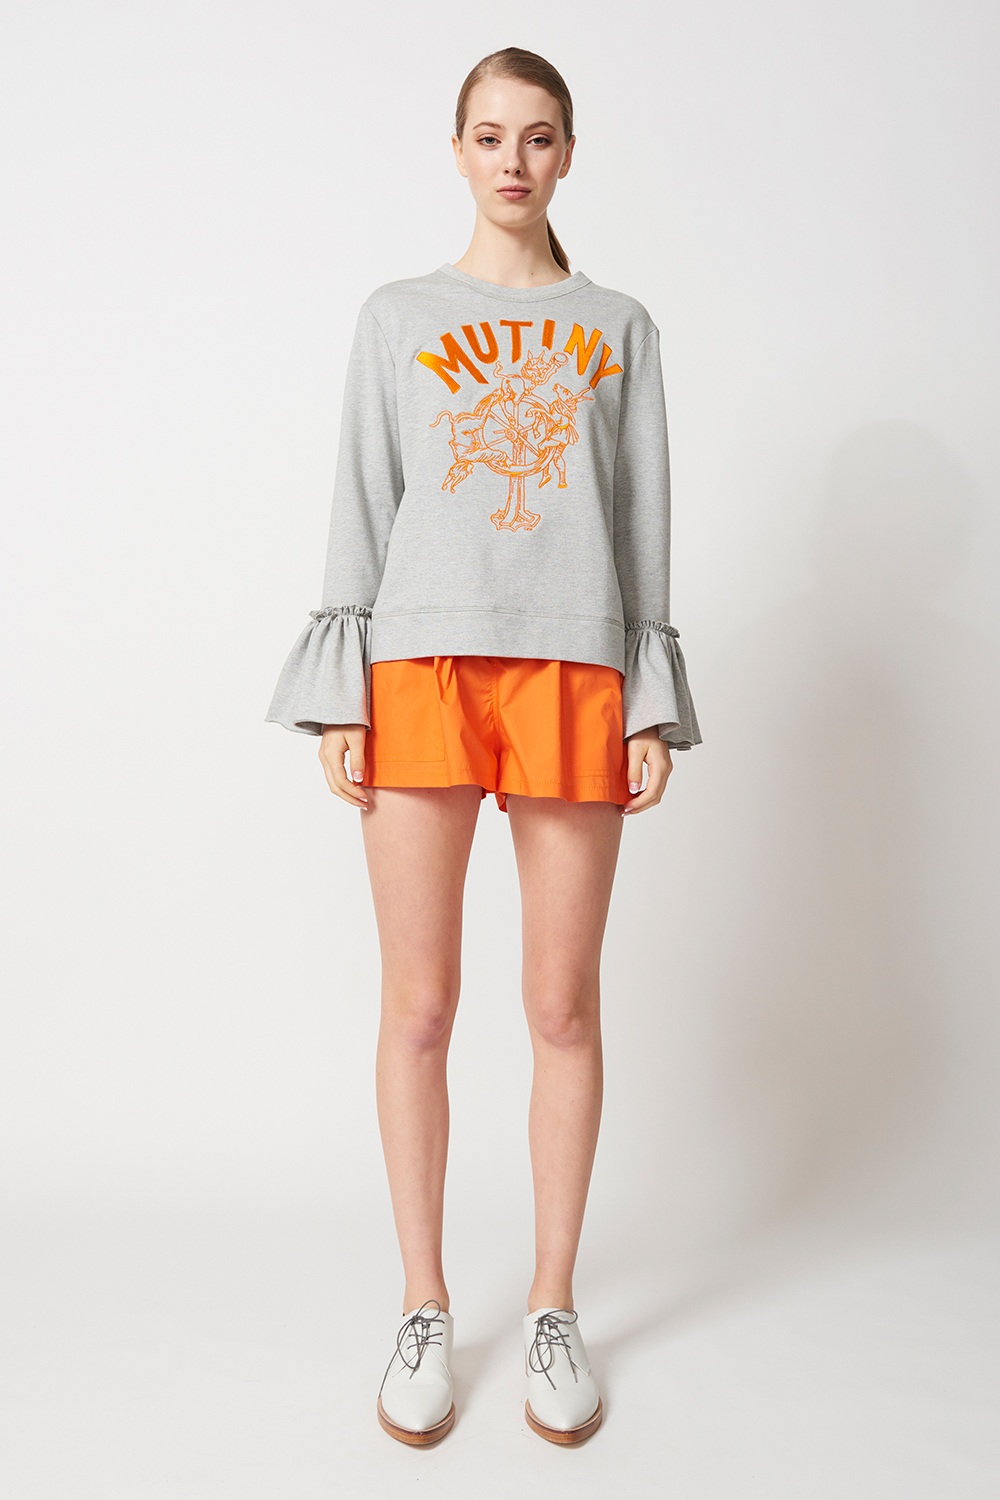 Mutiny sweatshirt, Karen Walker, $295